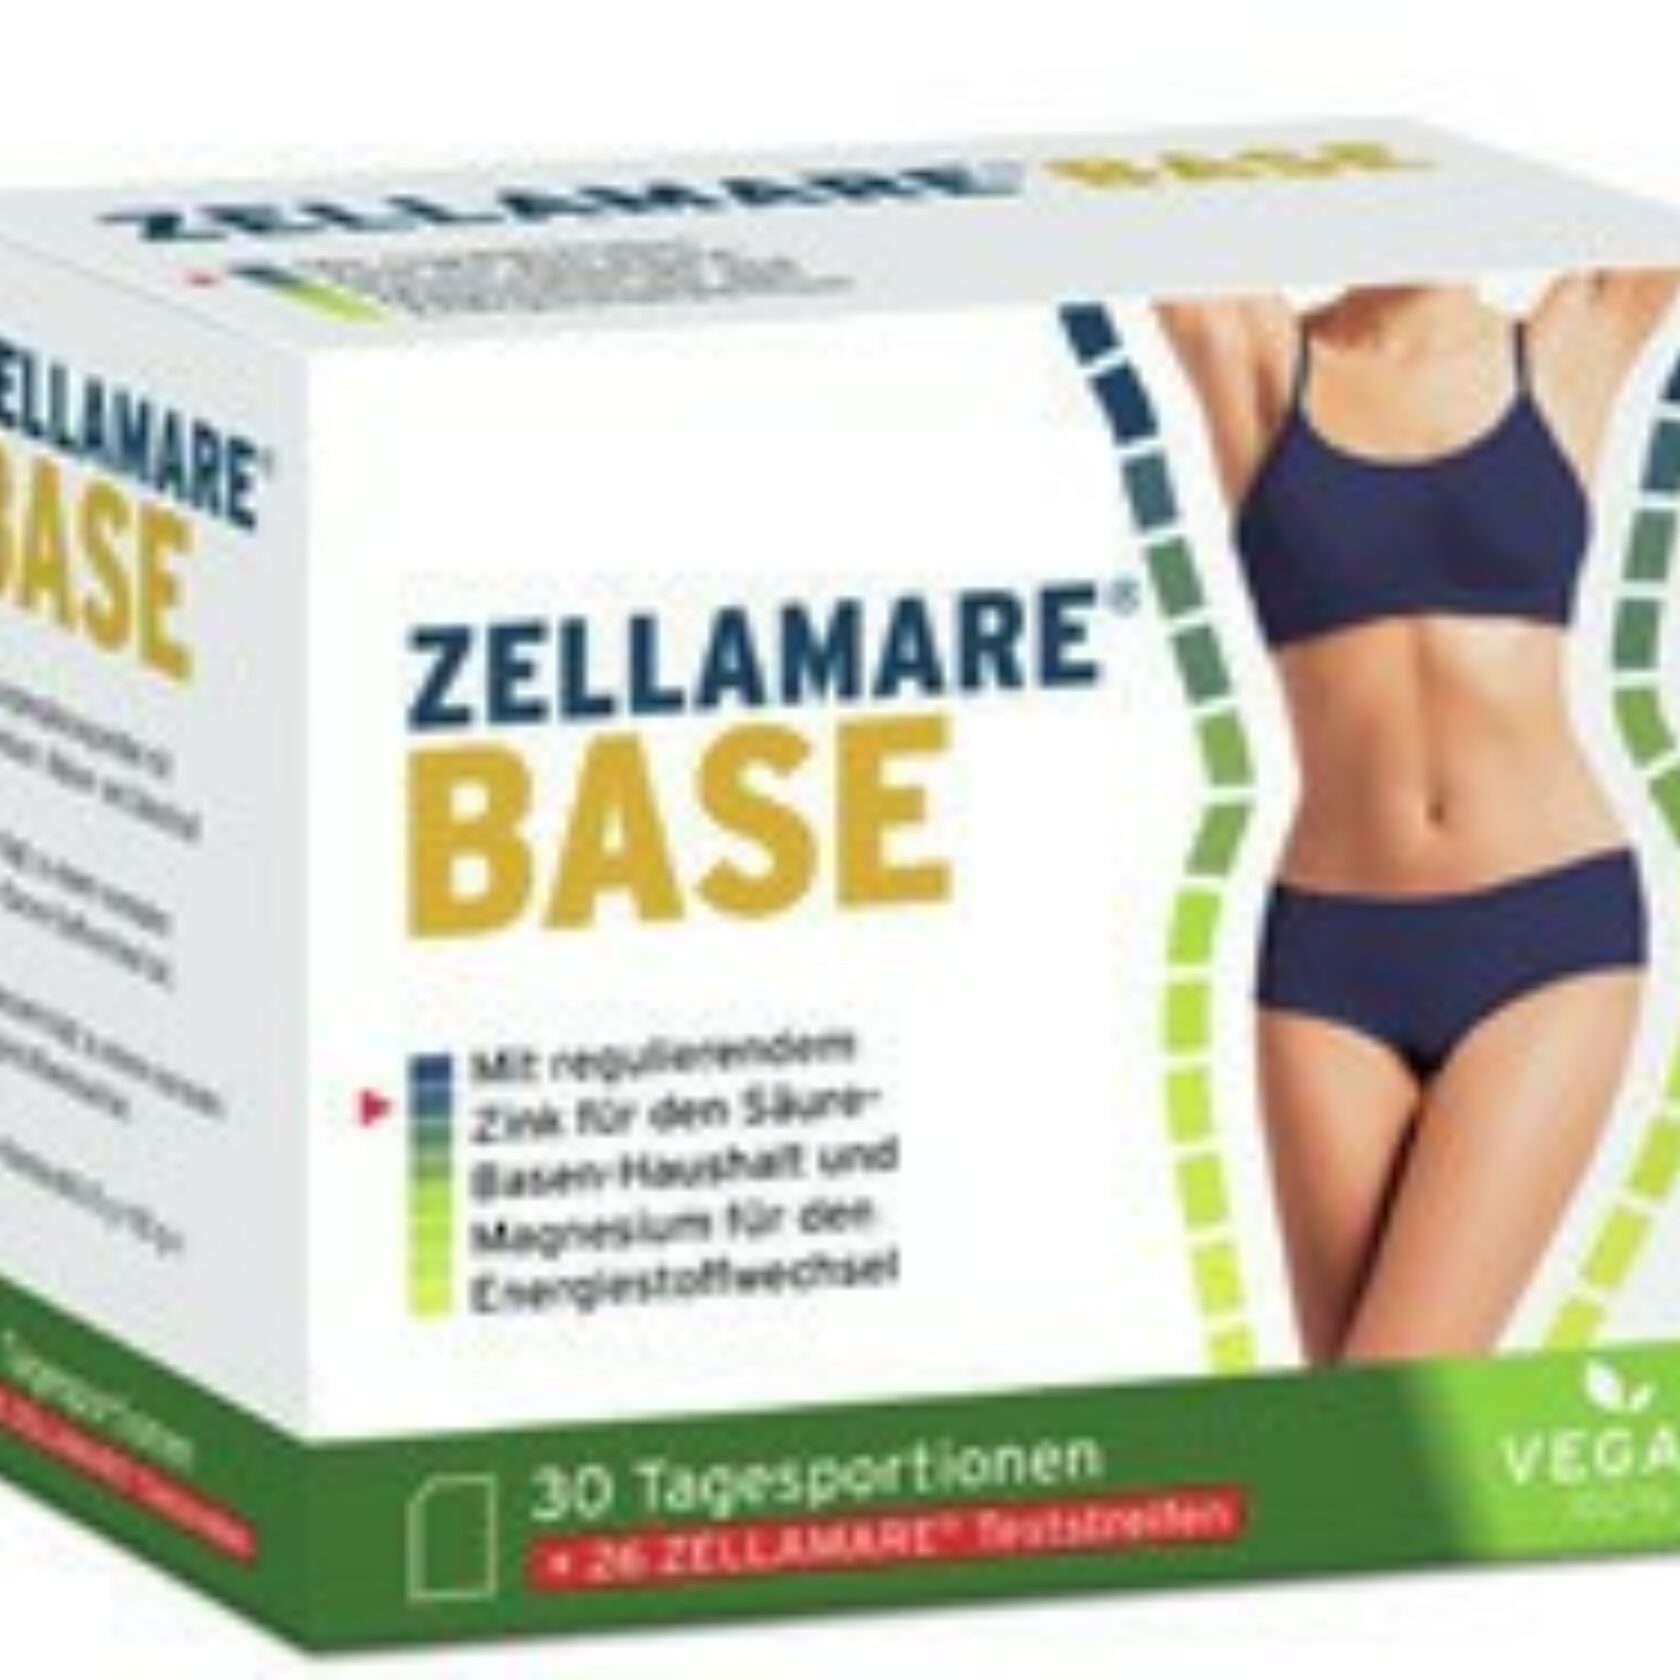 Produktpackung von Zellamare Base